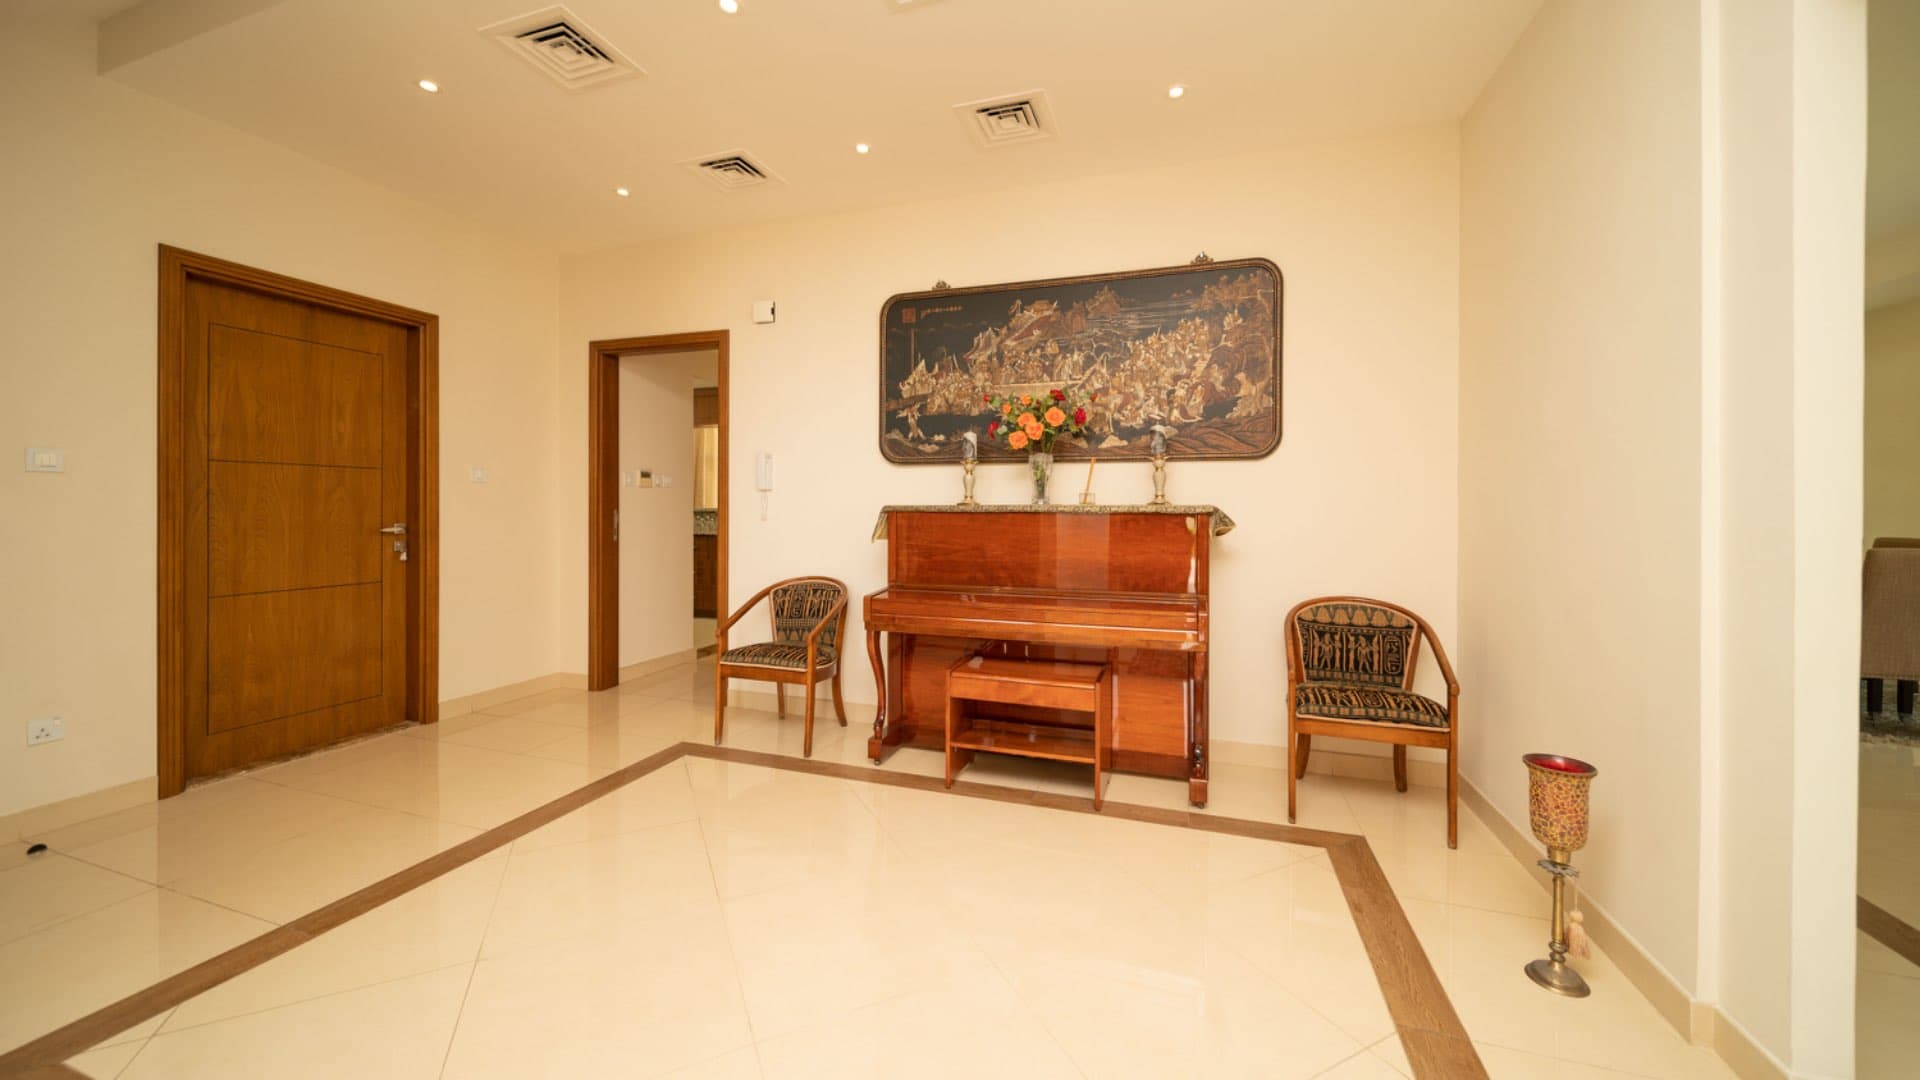 3 Bedroom Villa For Sale Rahat Lp11867 Ee6f42f0ae43c80.jpeg